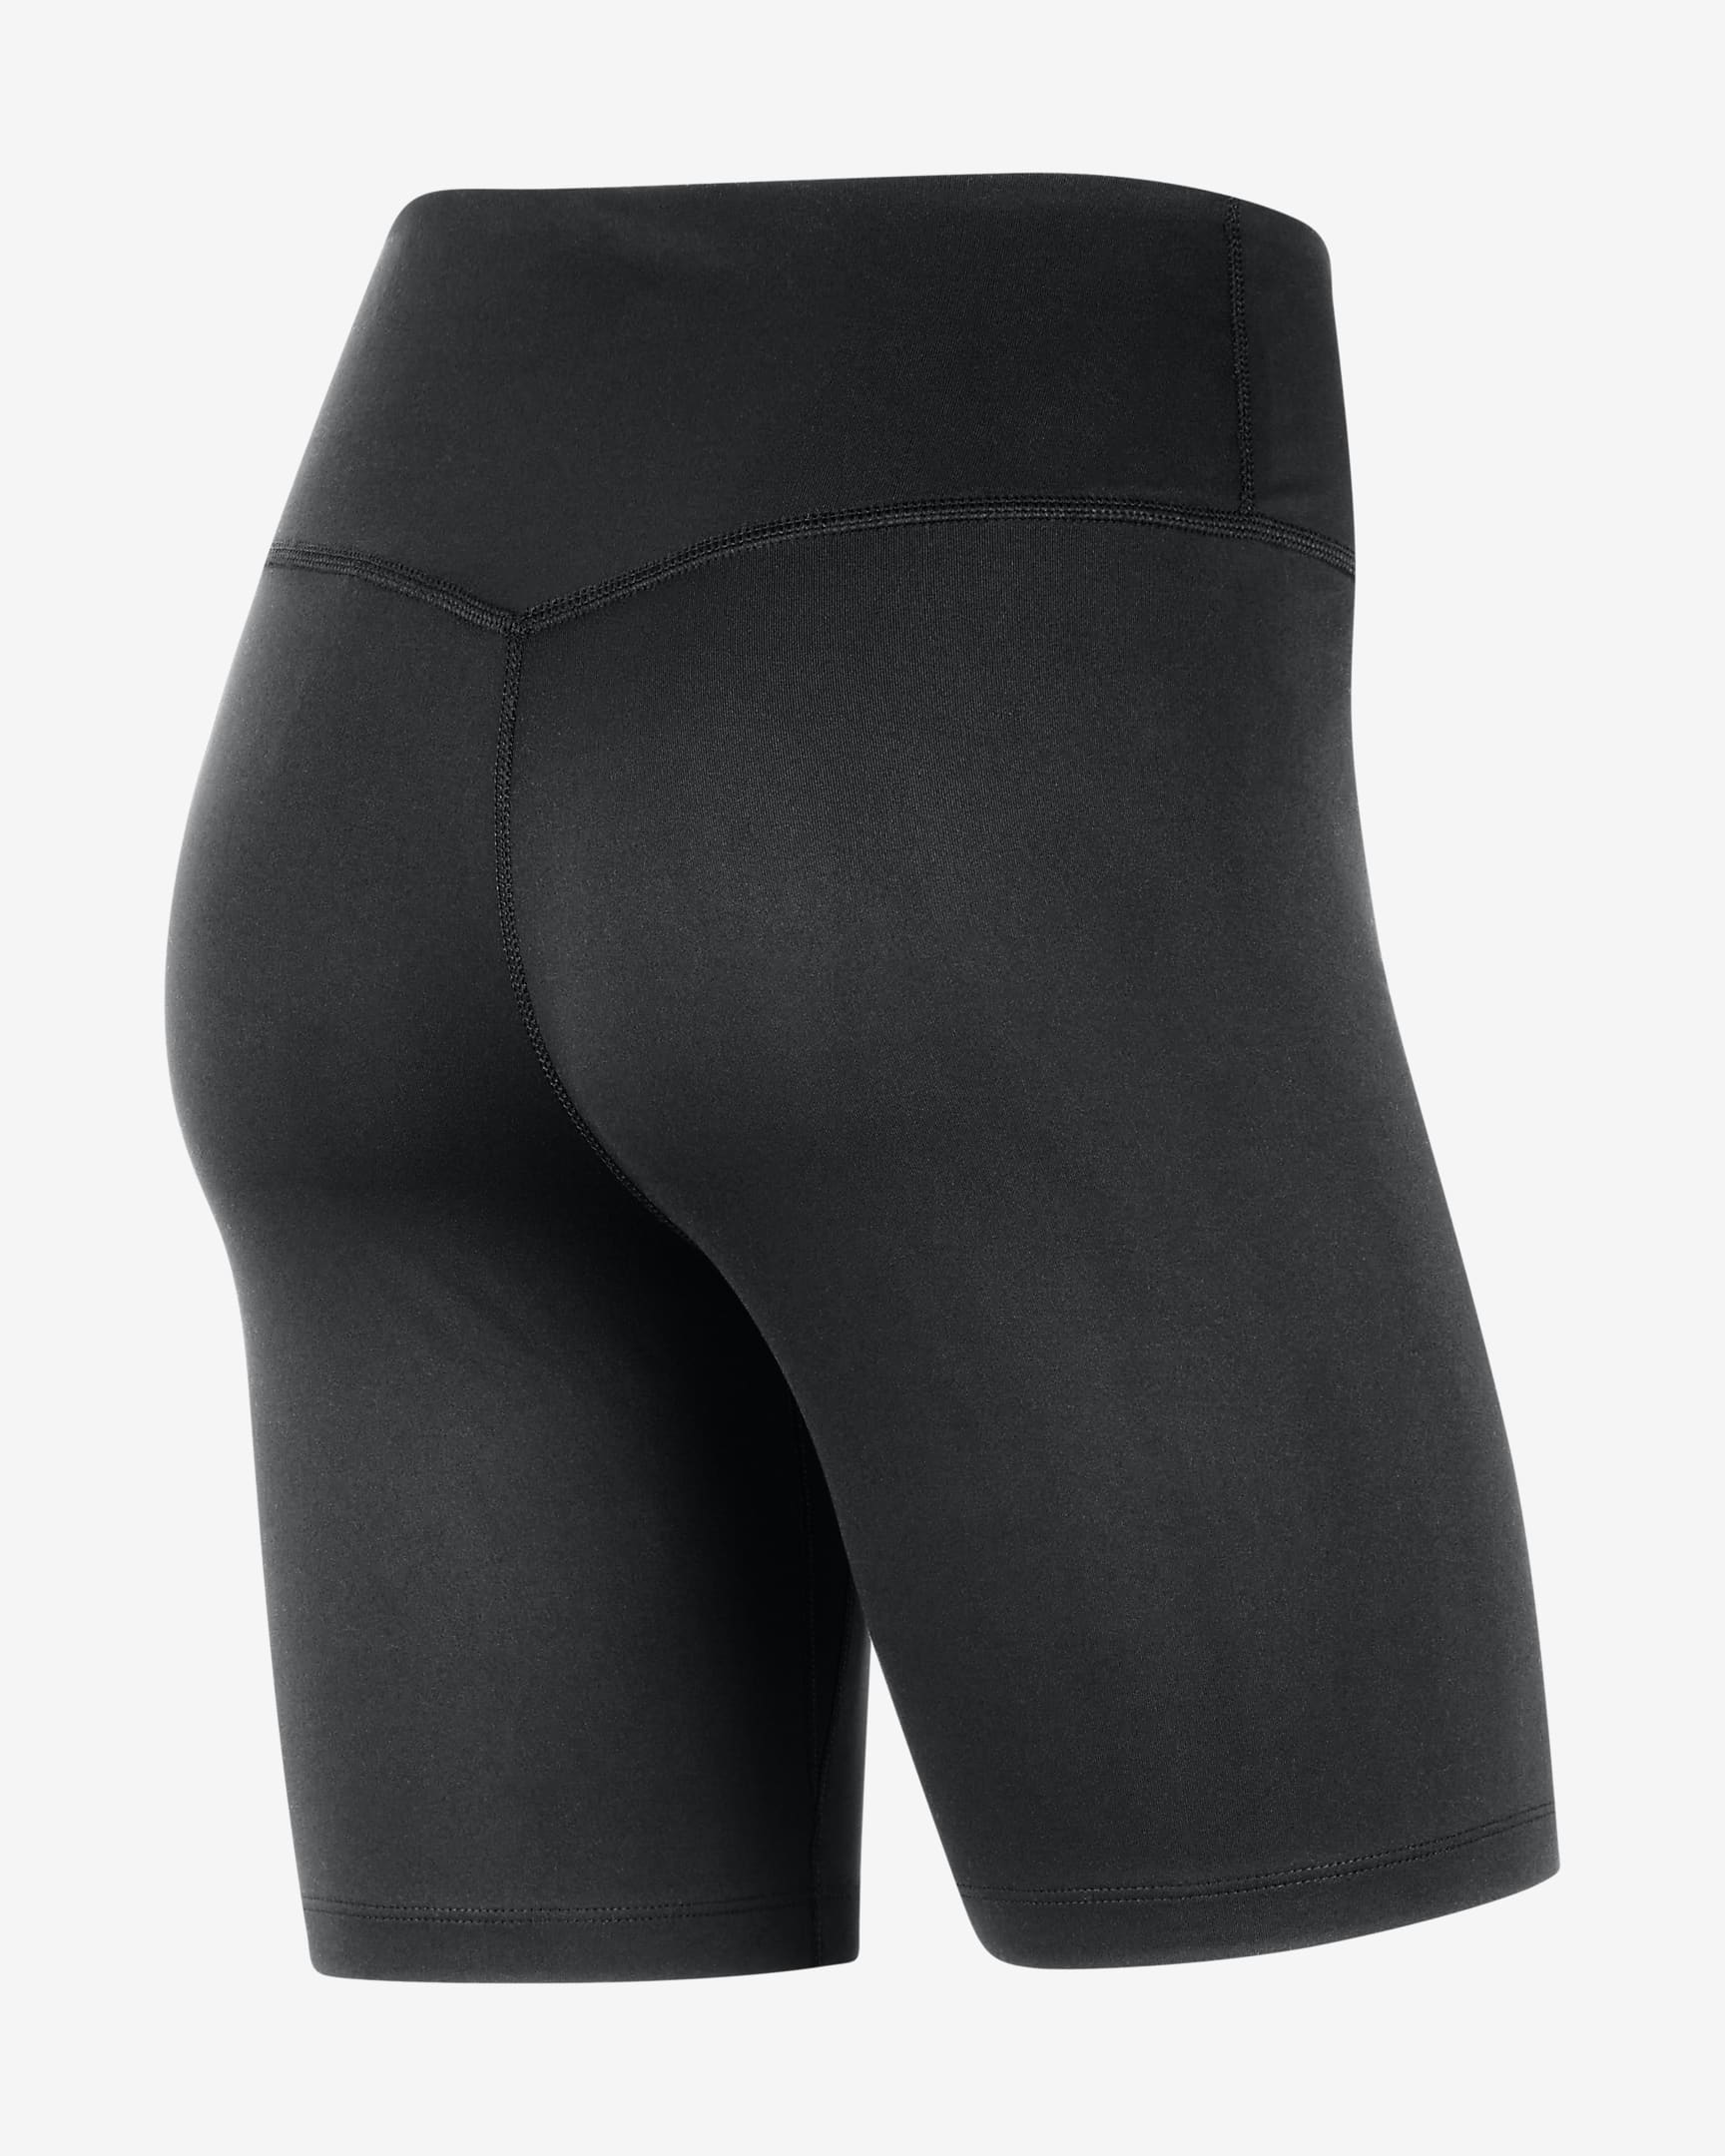 Shorts de ciclismo universitario Nike One de 18 cm para mujer Oregon ...